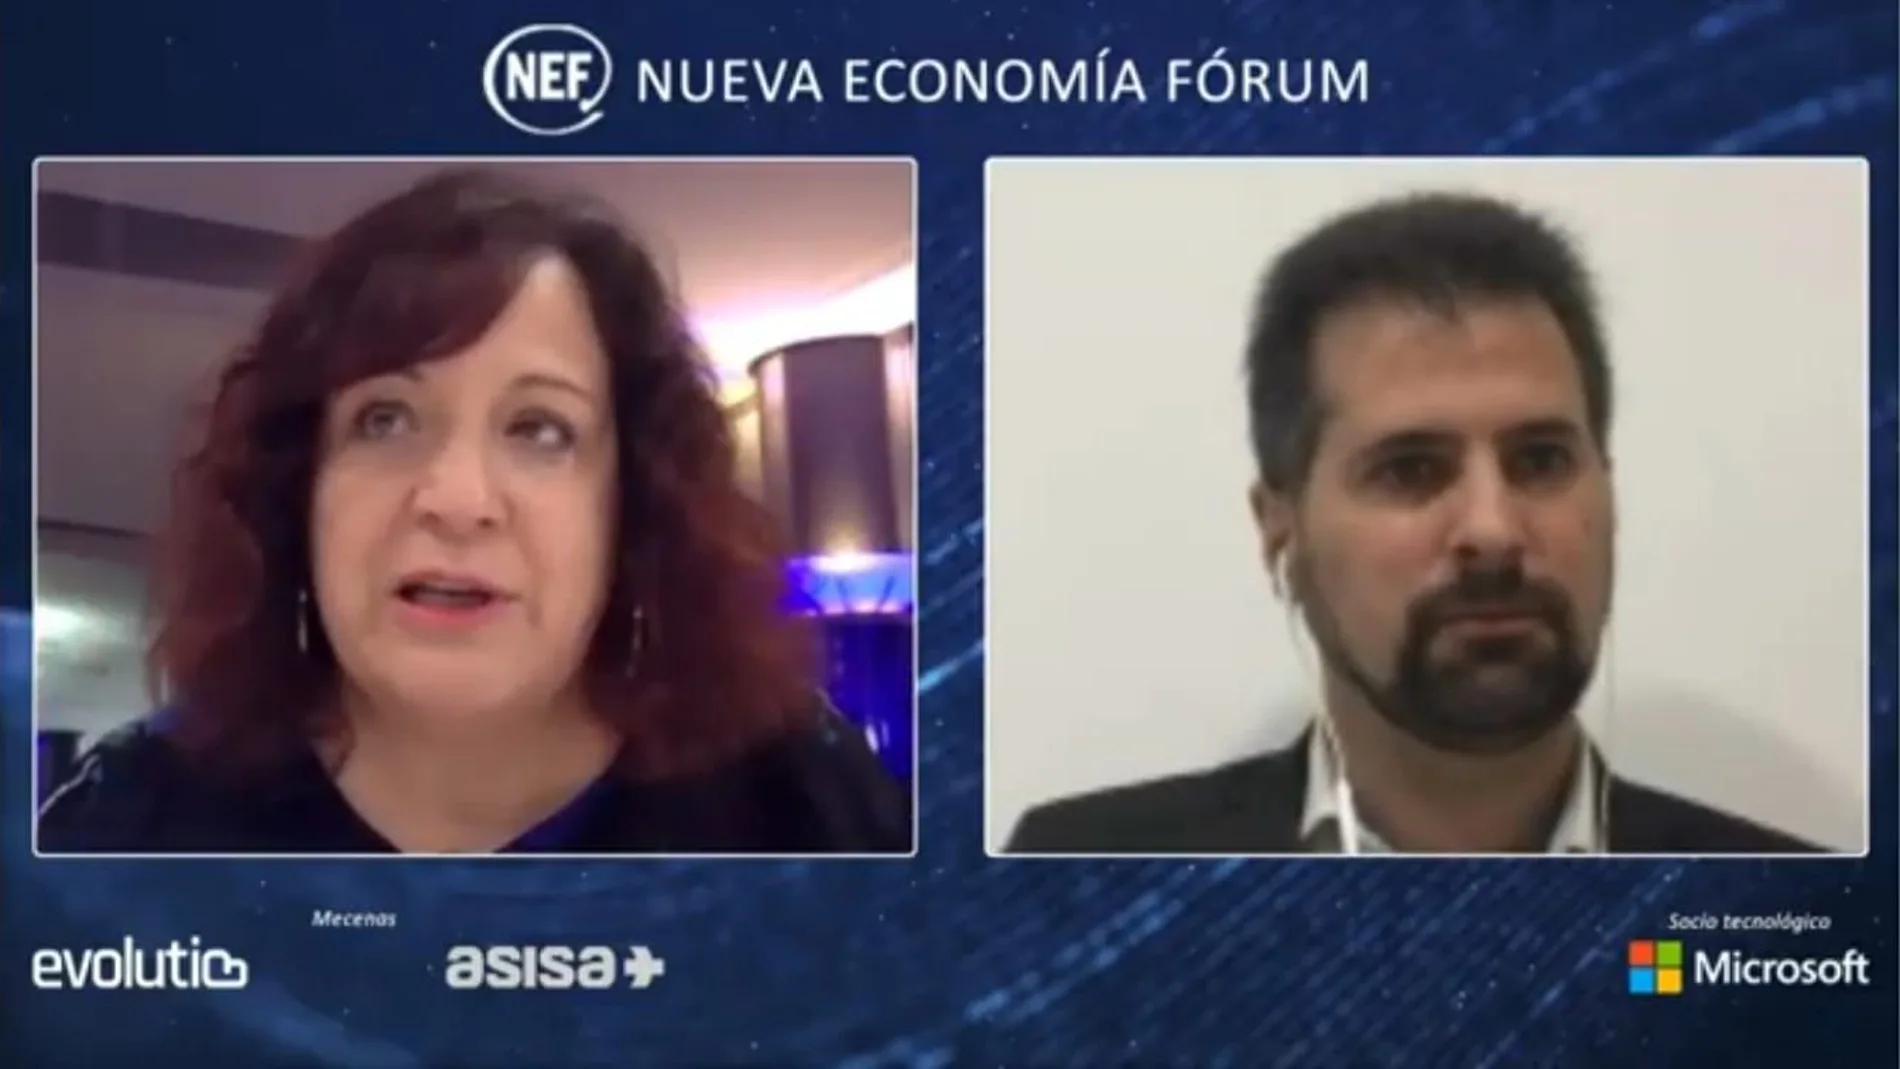 Los socialistas Luis Tudanca e Iratxe García participan de manera telemática en Nueva Economía Forum